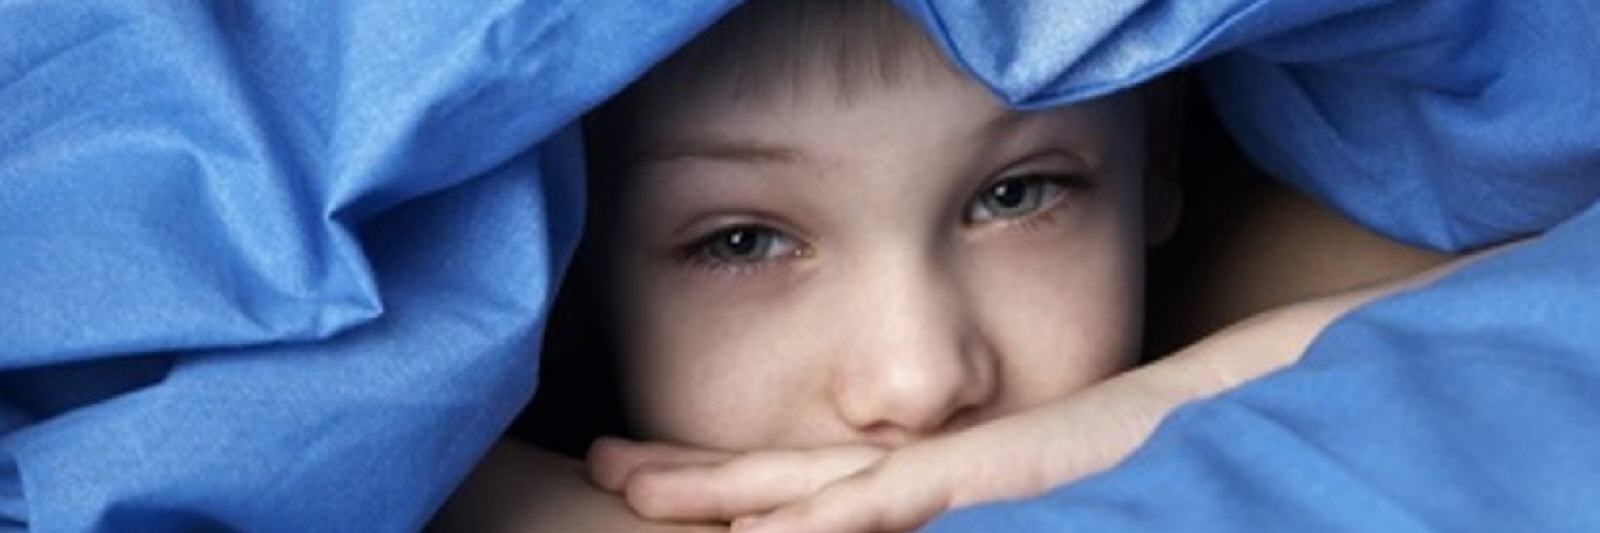 Insomnio infantil: así podemos ayudar a los más pequeños a conciliar el sueño